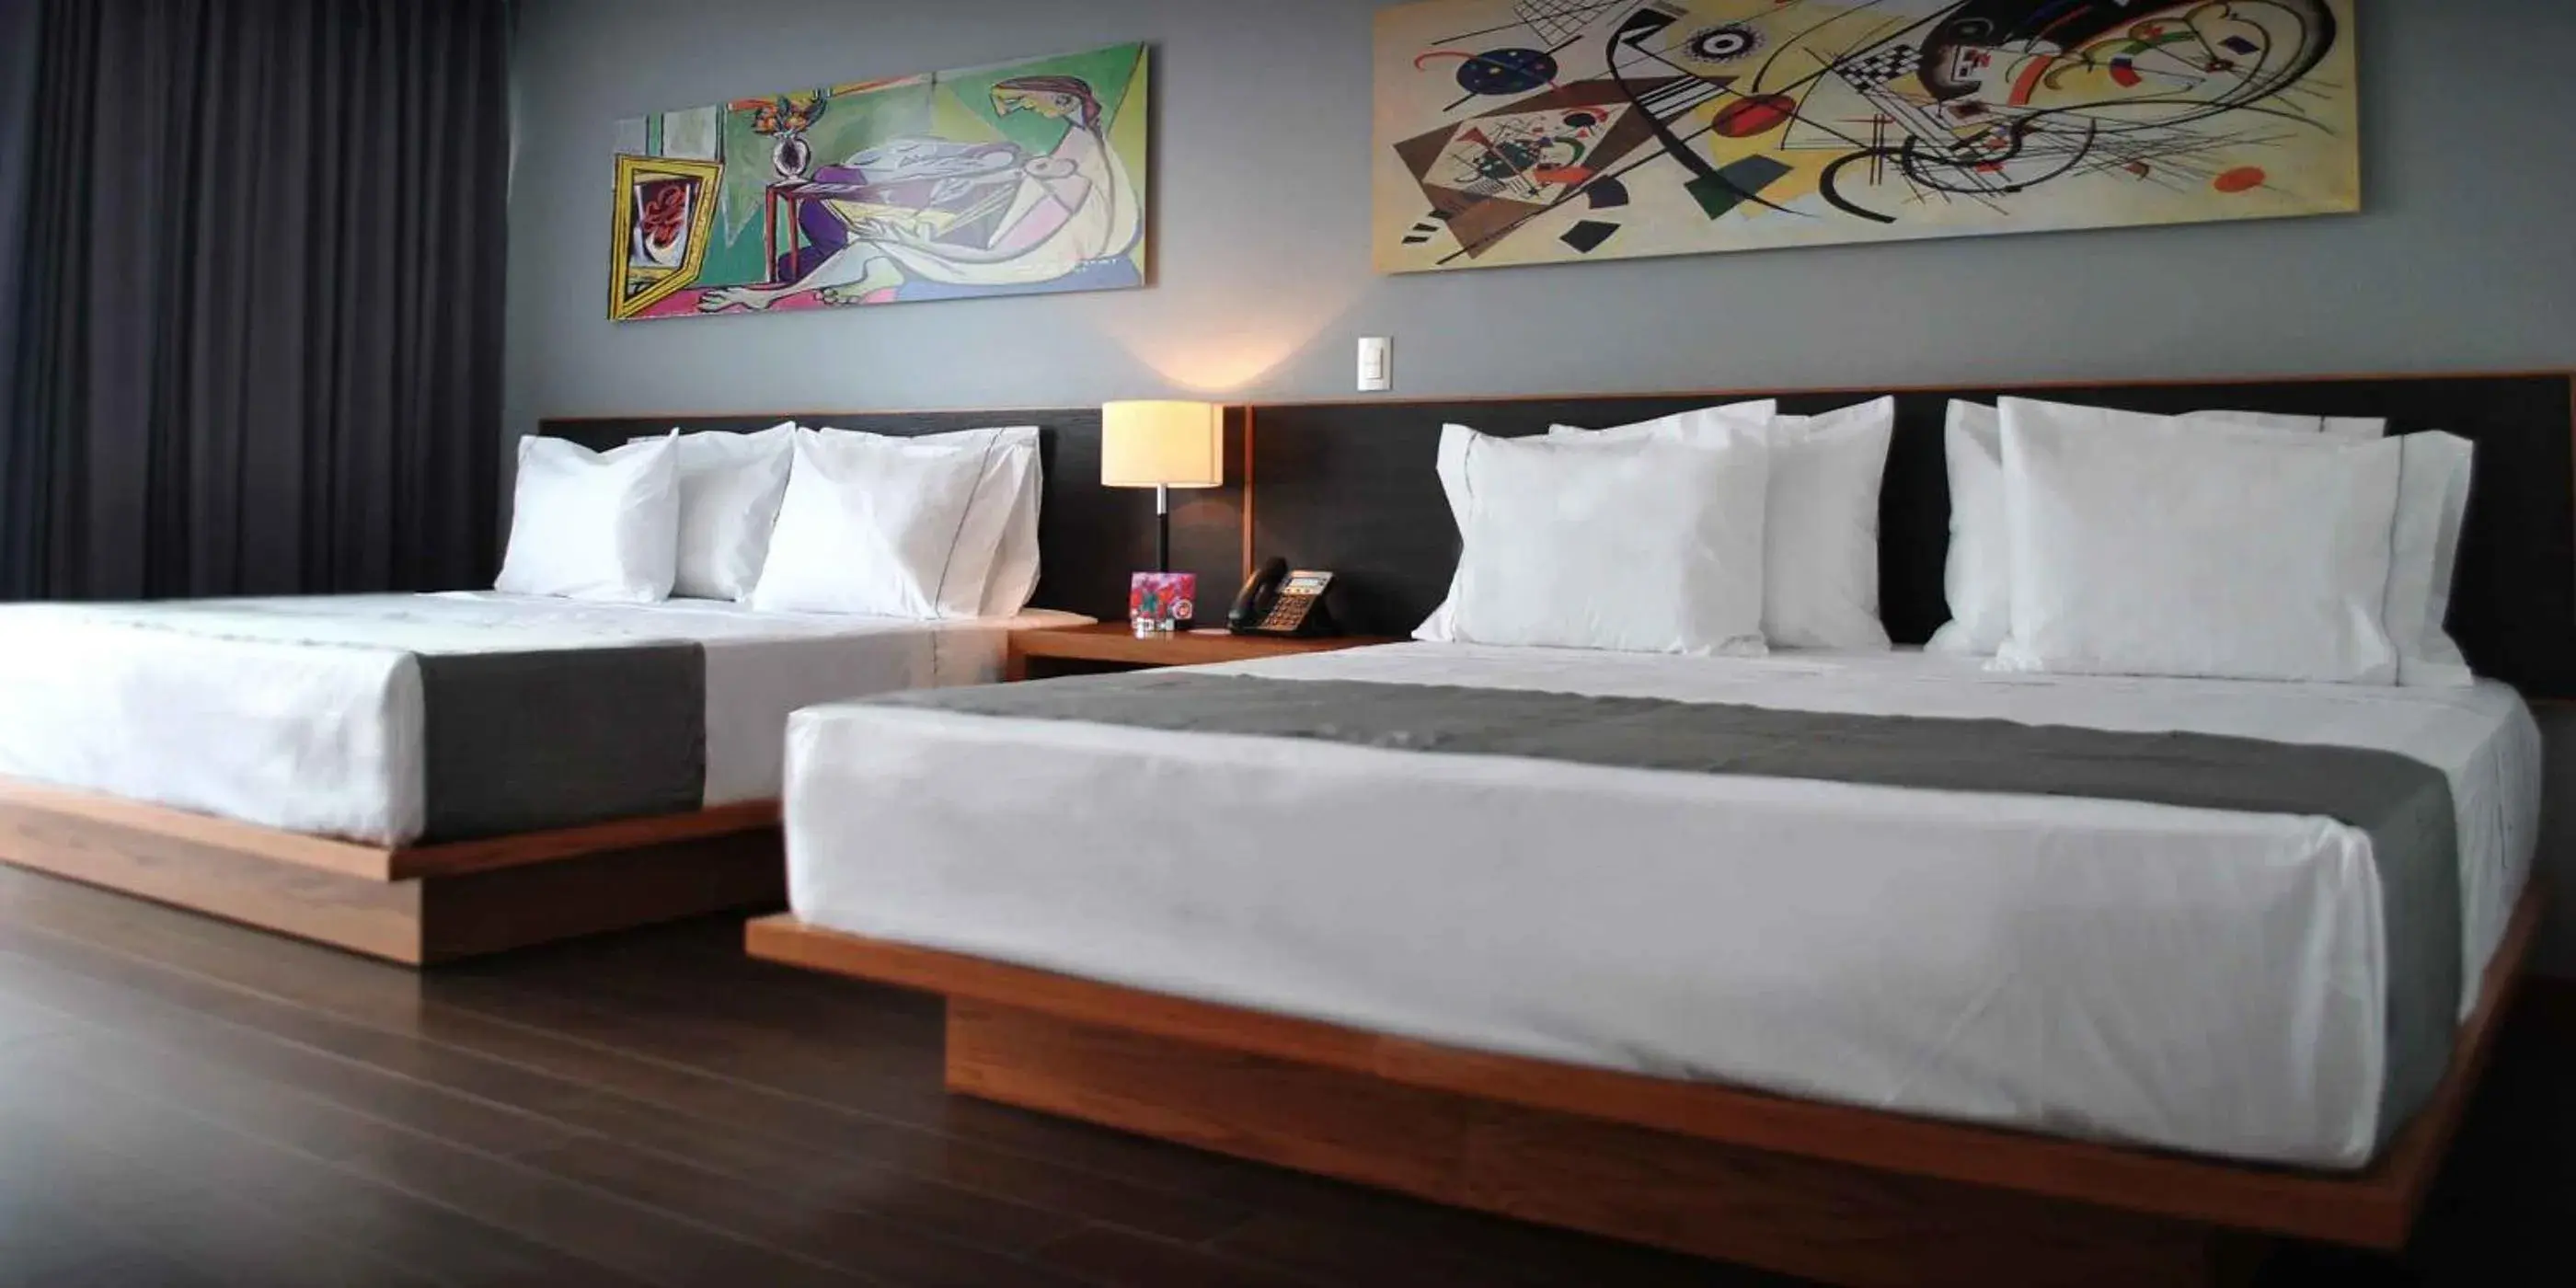 Bed in Hotel y Tú Expo